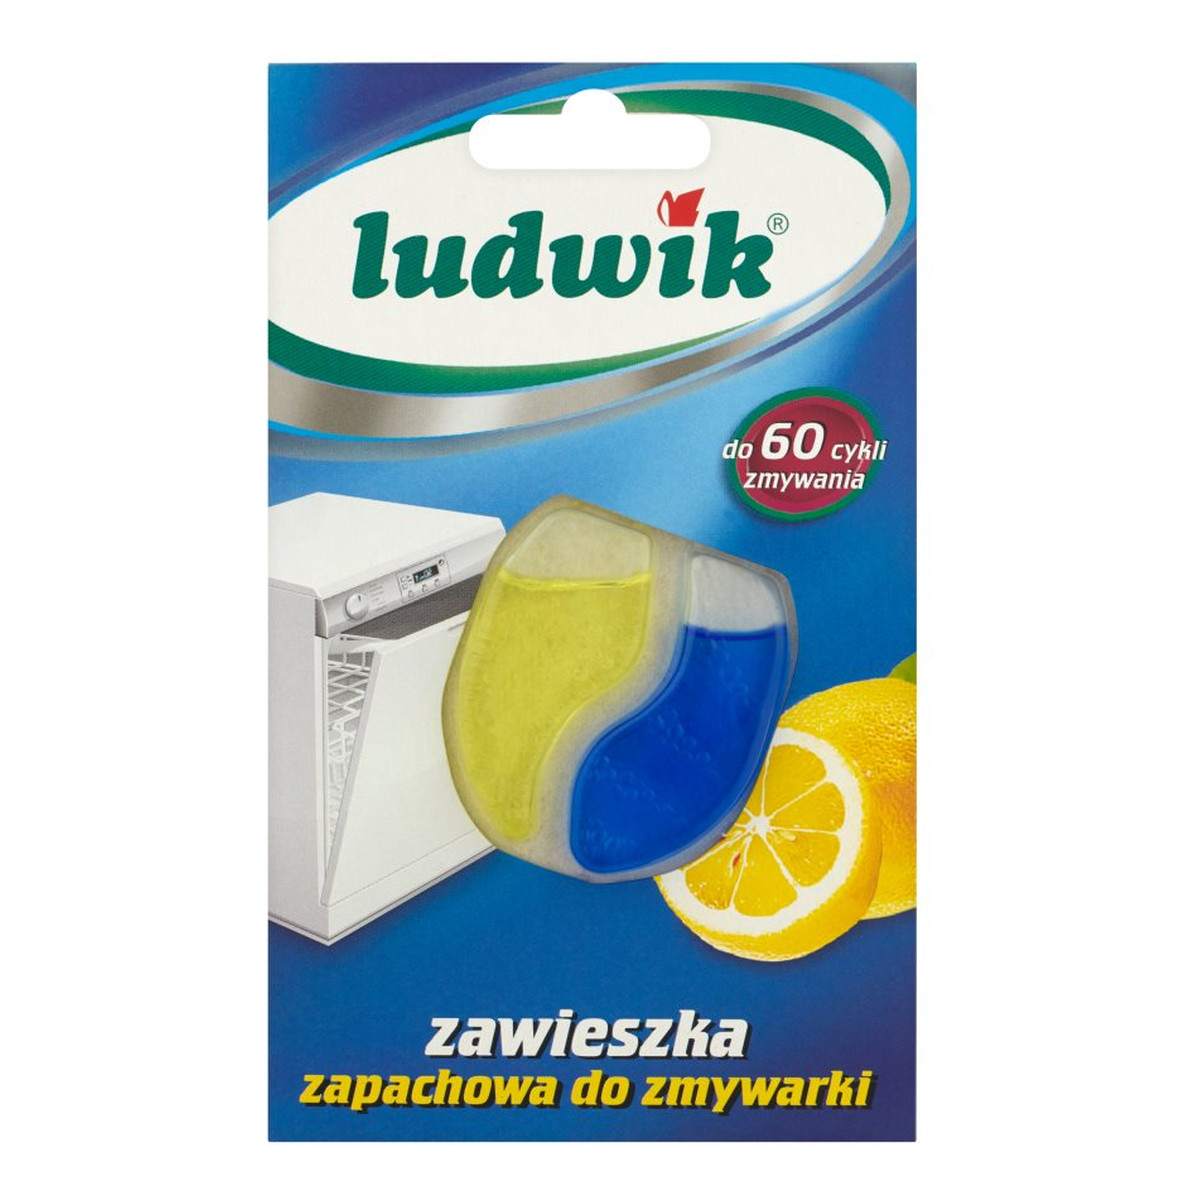 Ludwik Zawieszka zapachowa do zmywarki (60 cykli zmywania) 6ml